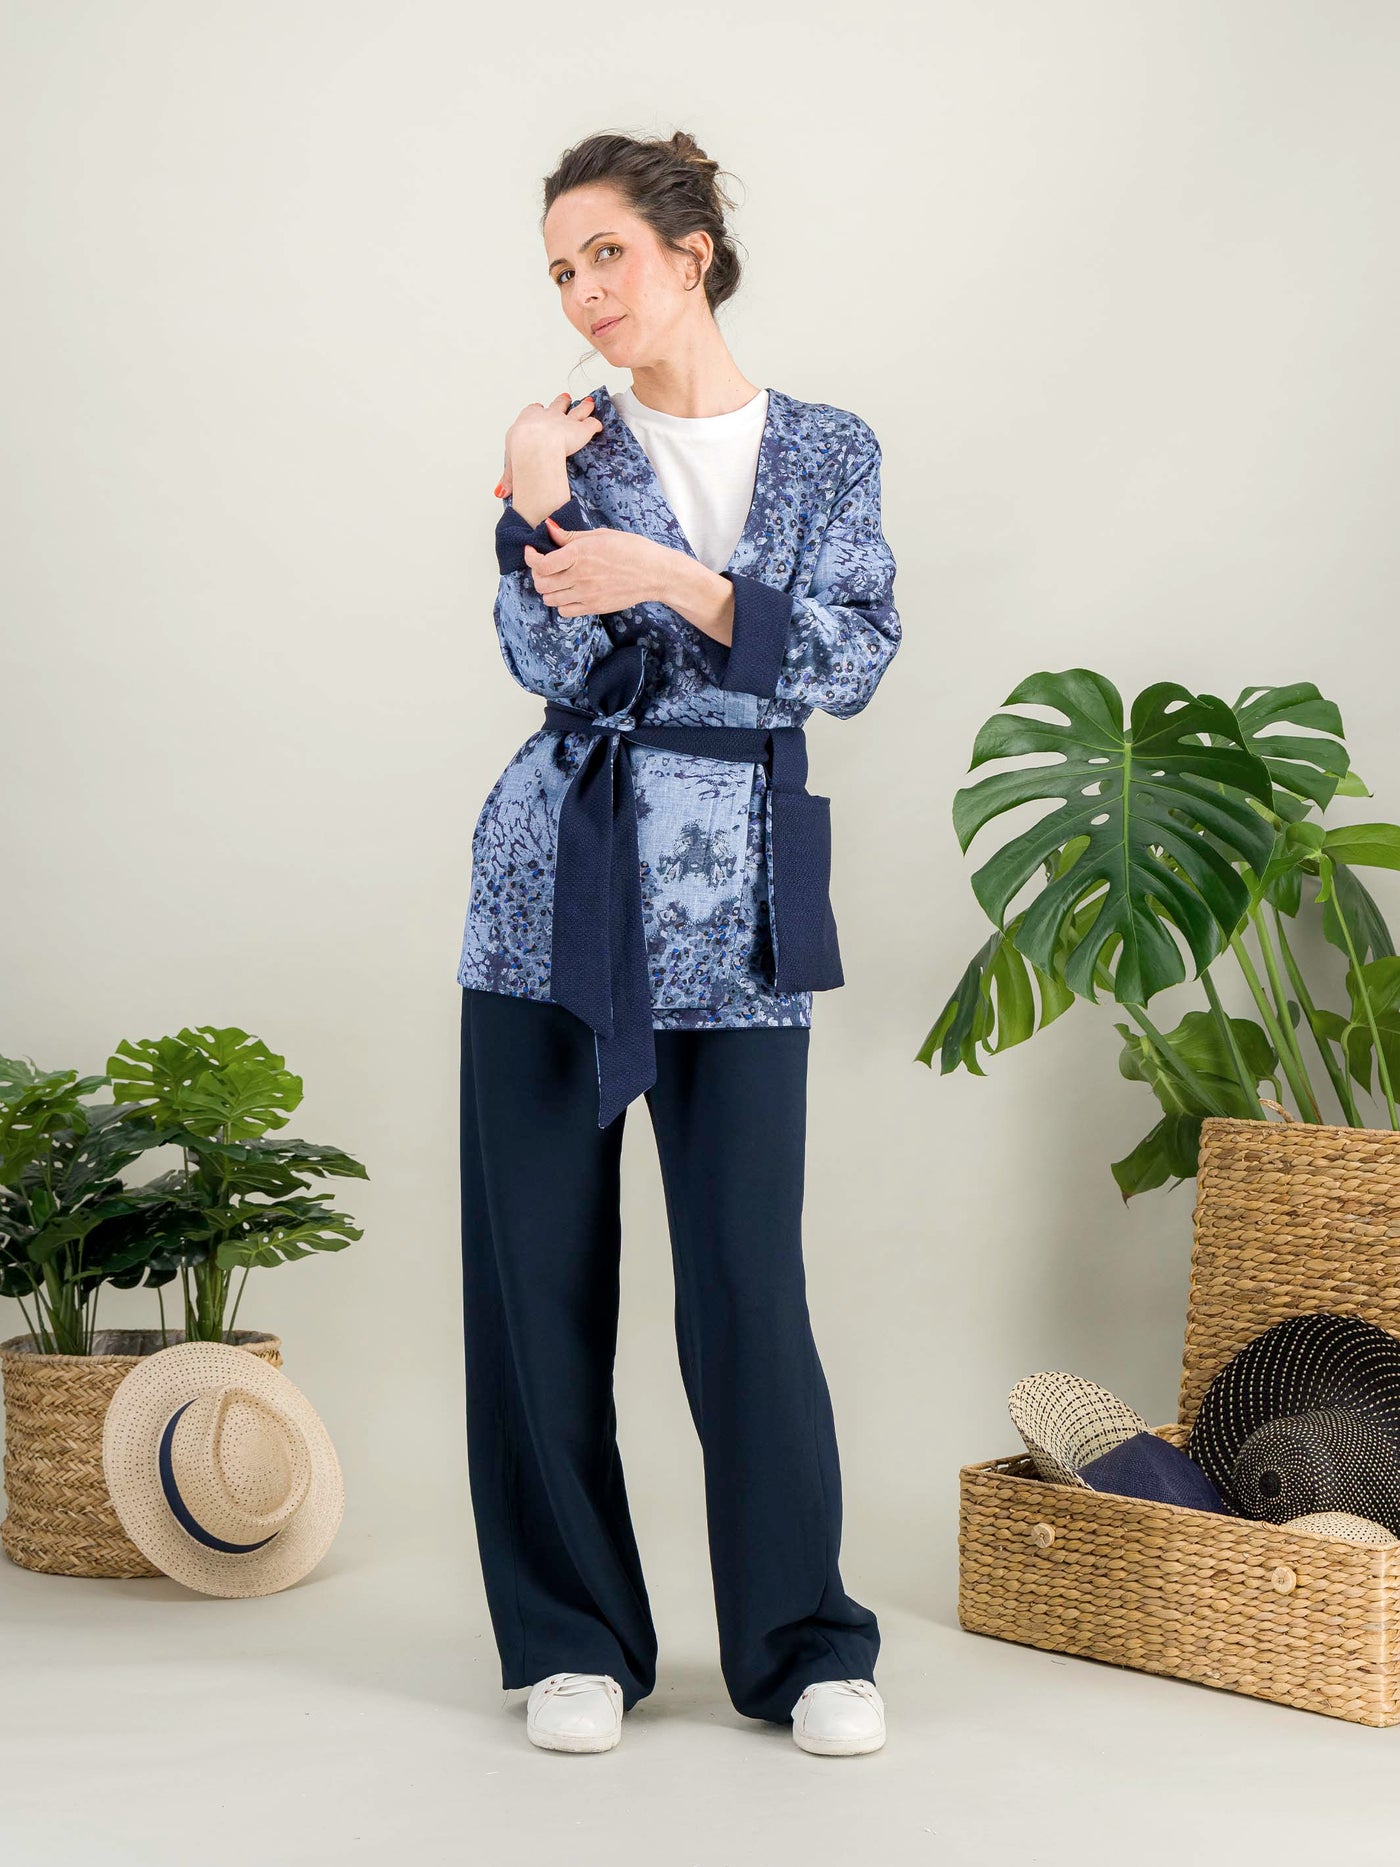 veste kimono imprimé bleu organic pour aller travailler 